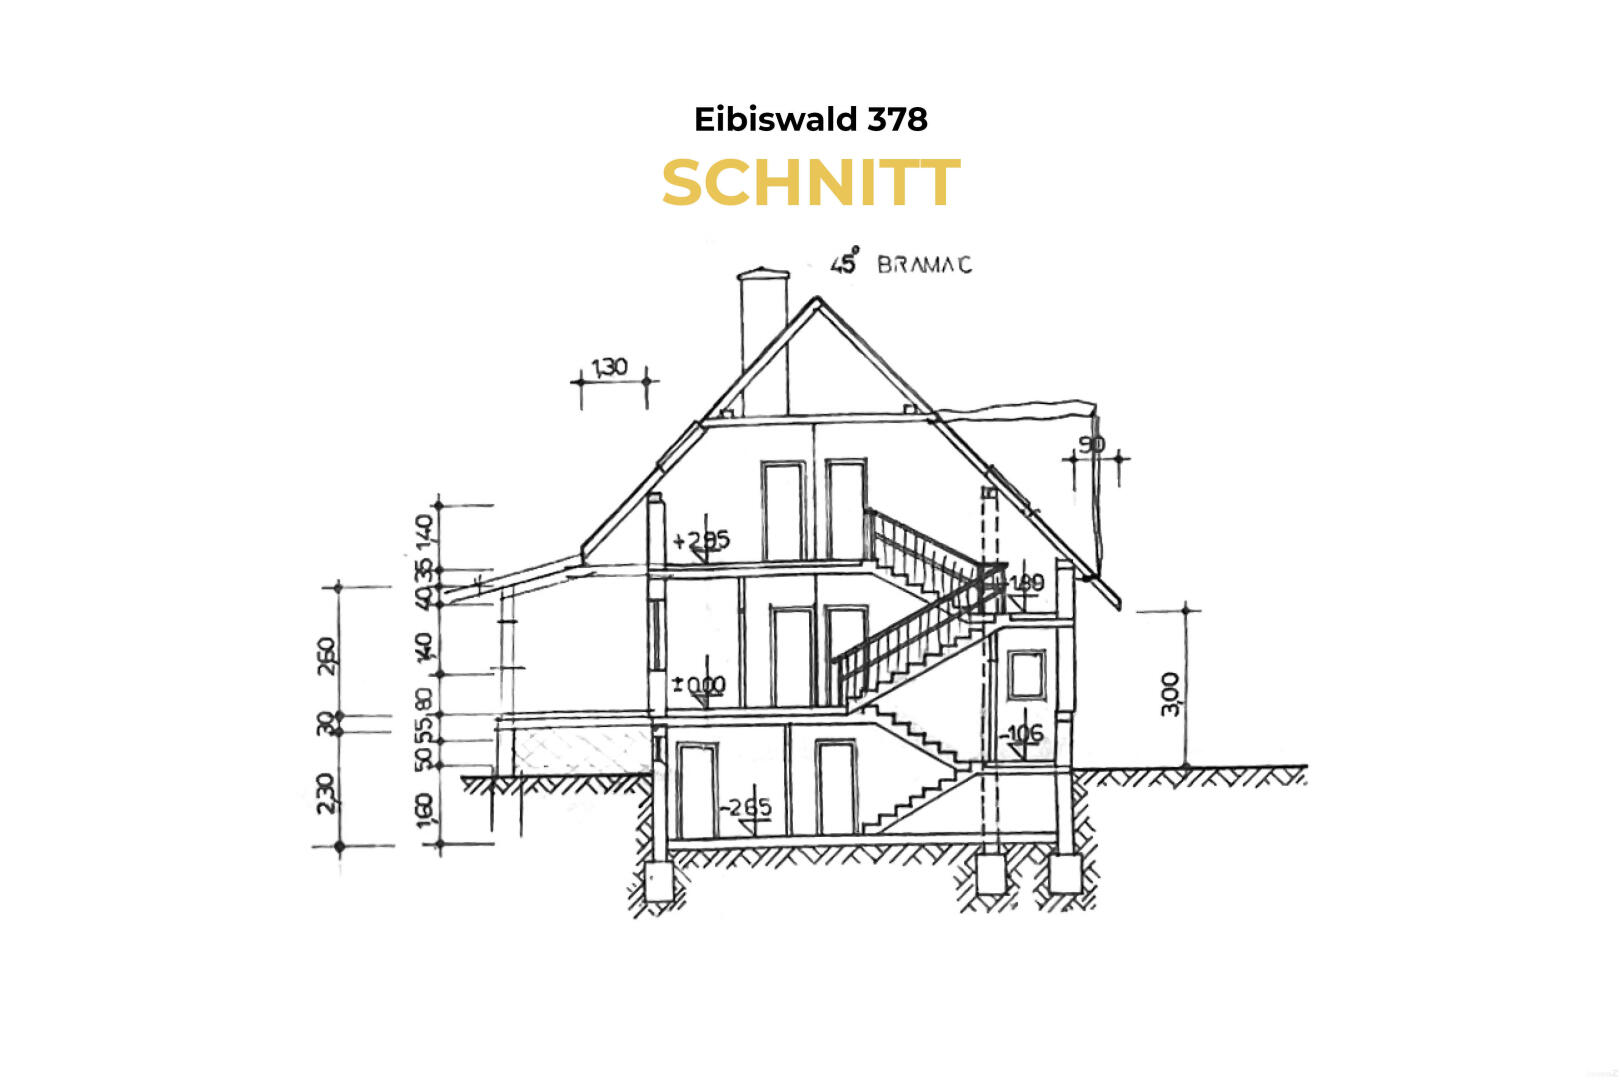 Haus zu kaufen: Eibiswald, 8552 Eibiswald - 4 Eibiswald 378 - Schnitt